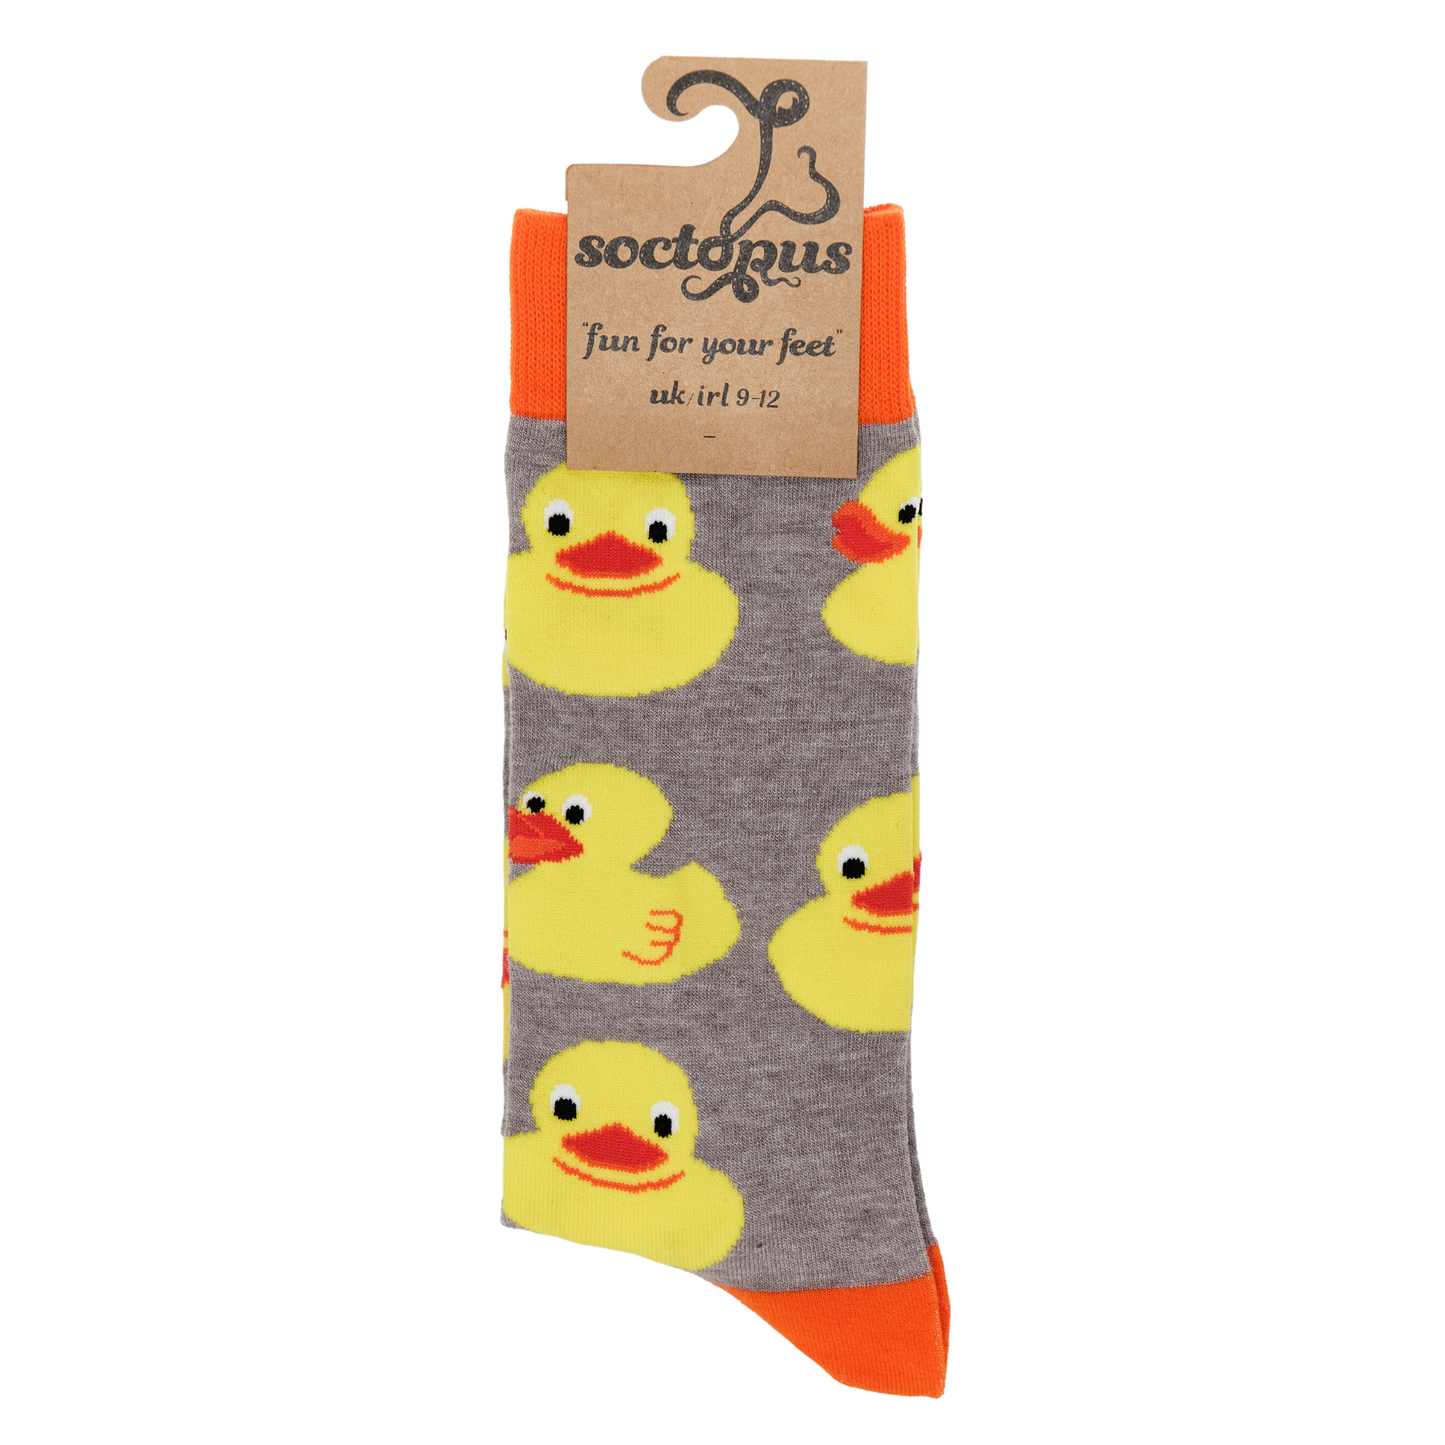 Rubber Duckies Socks